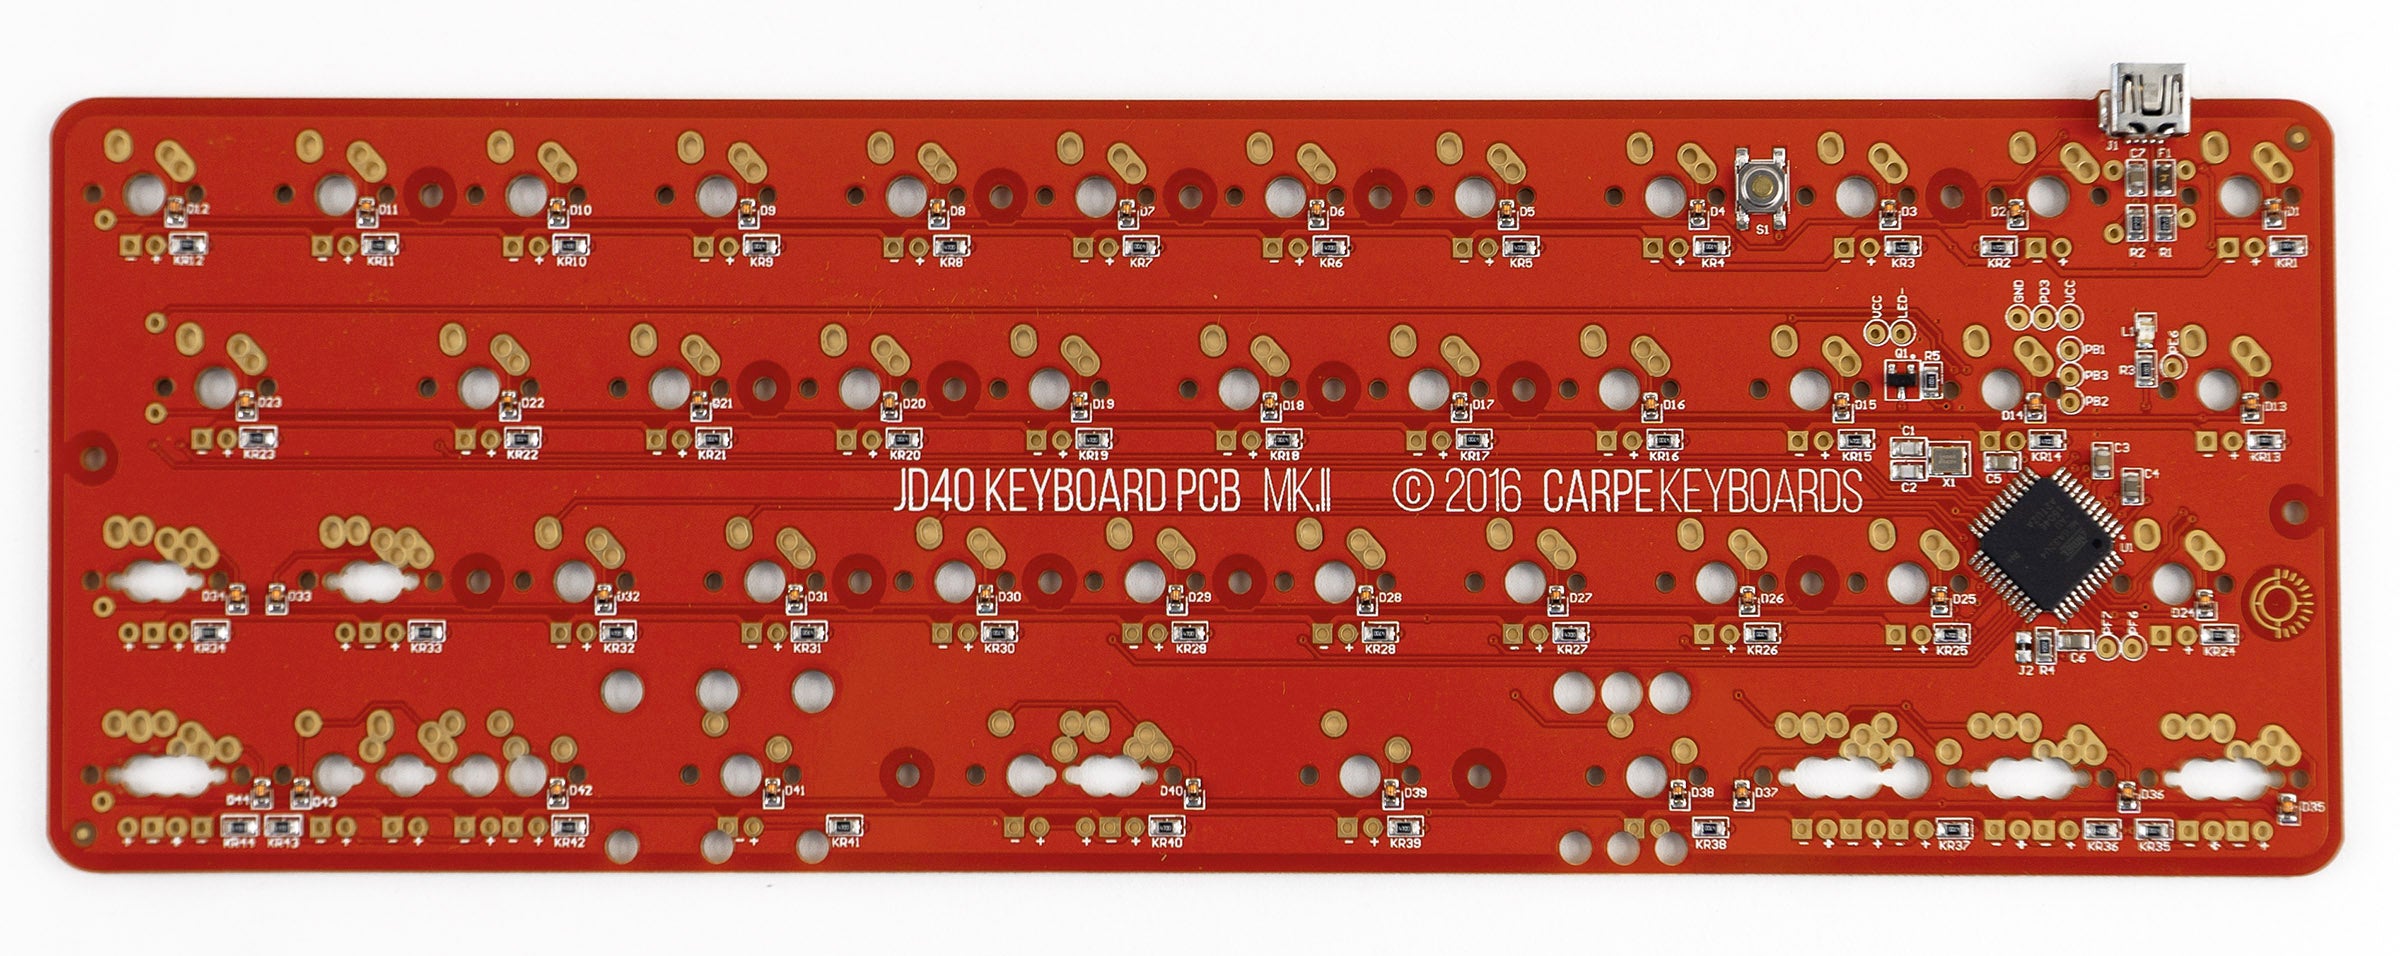 Carpe Keyboards JD40 PCB Mk. II MK07PWP8C3 |0|